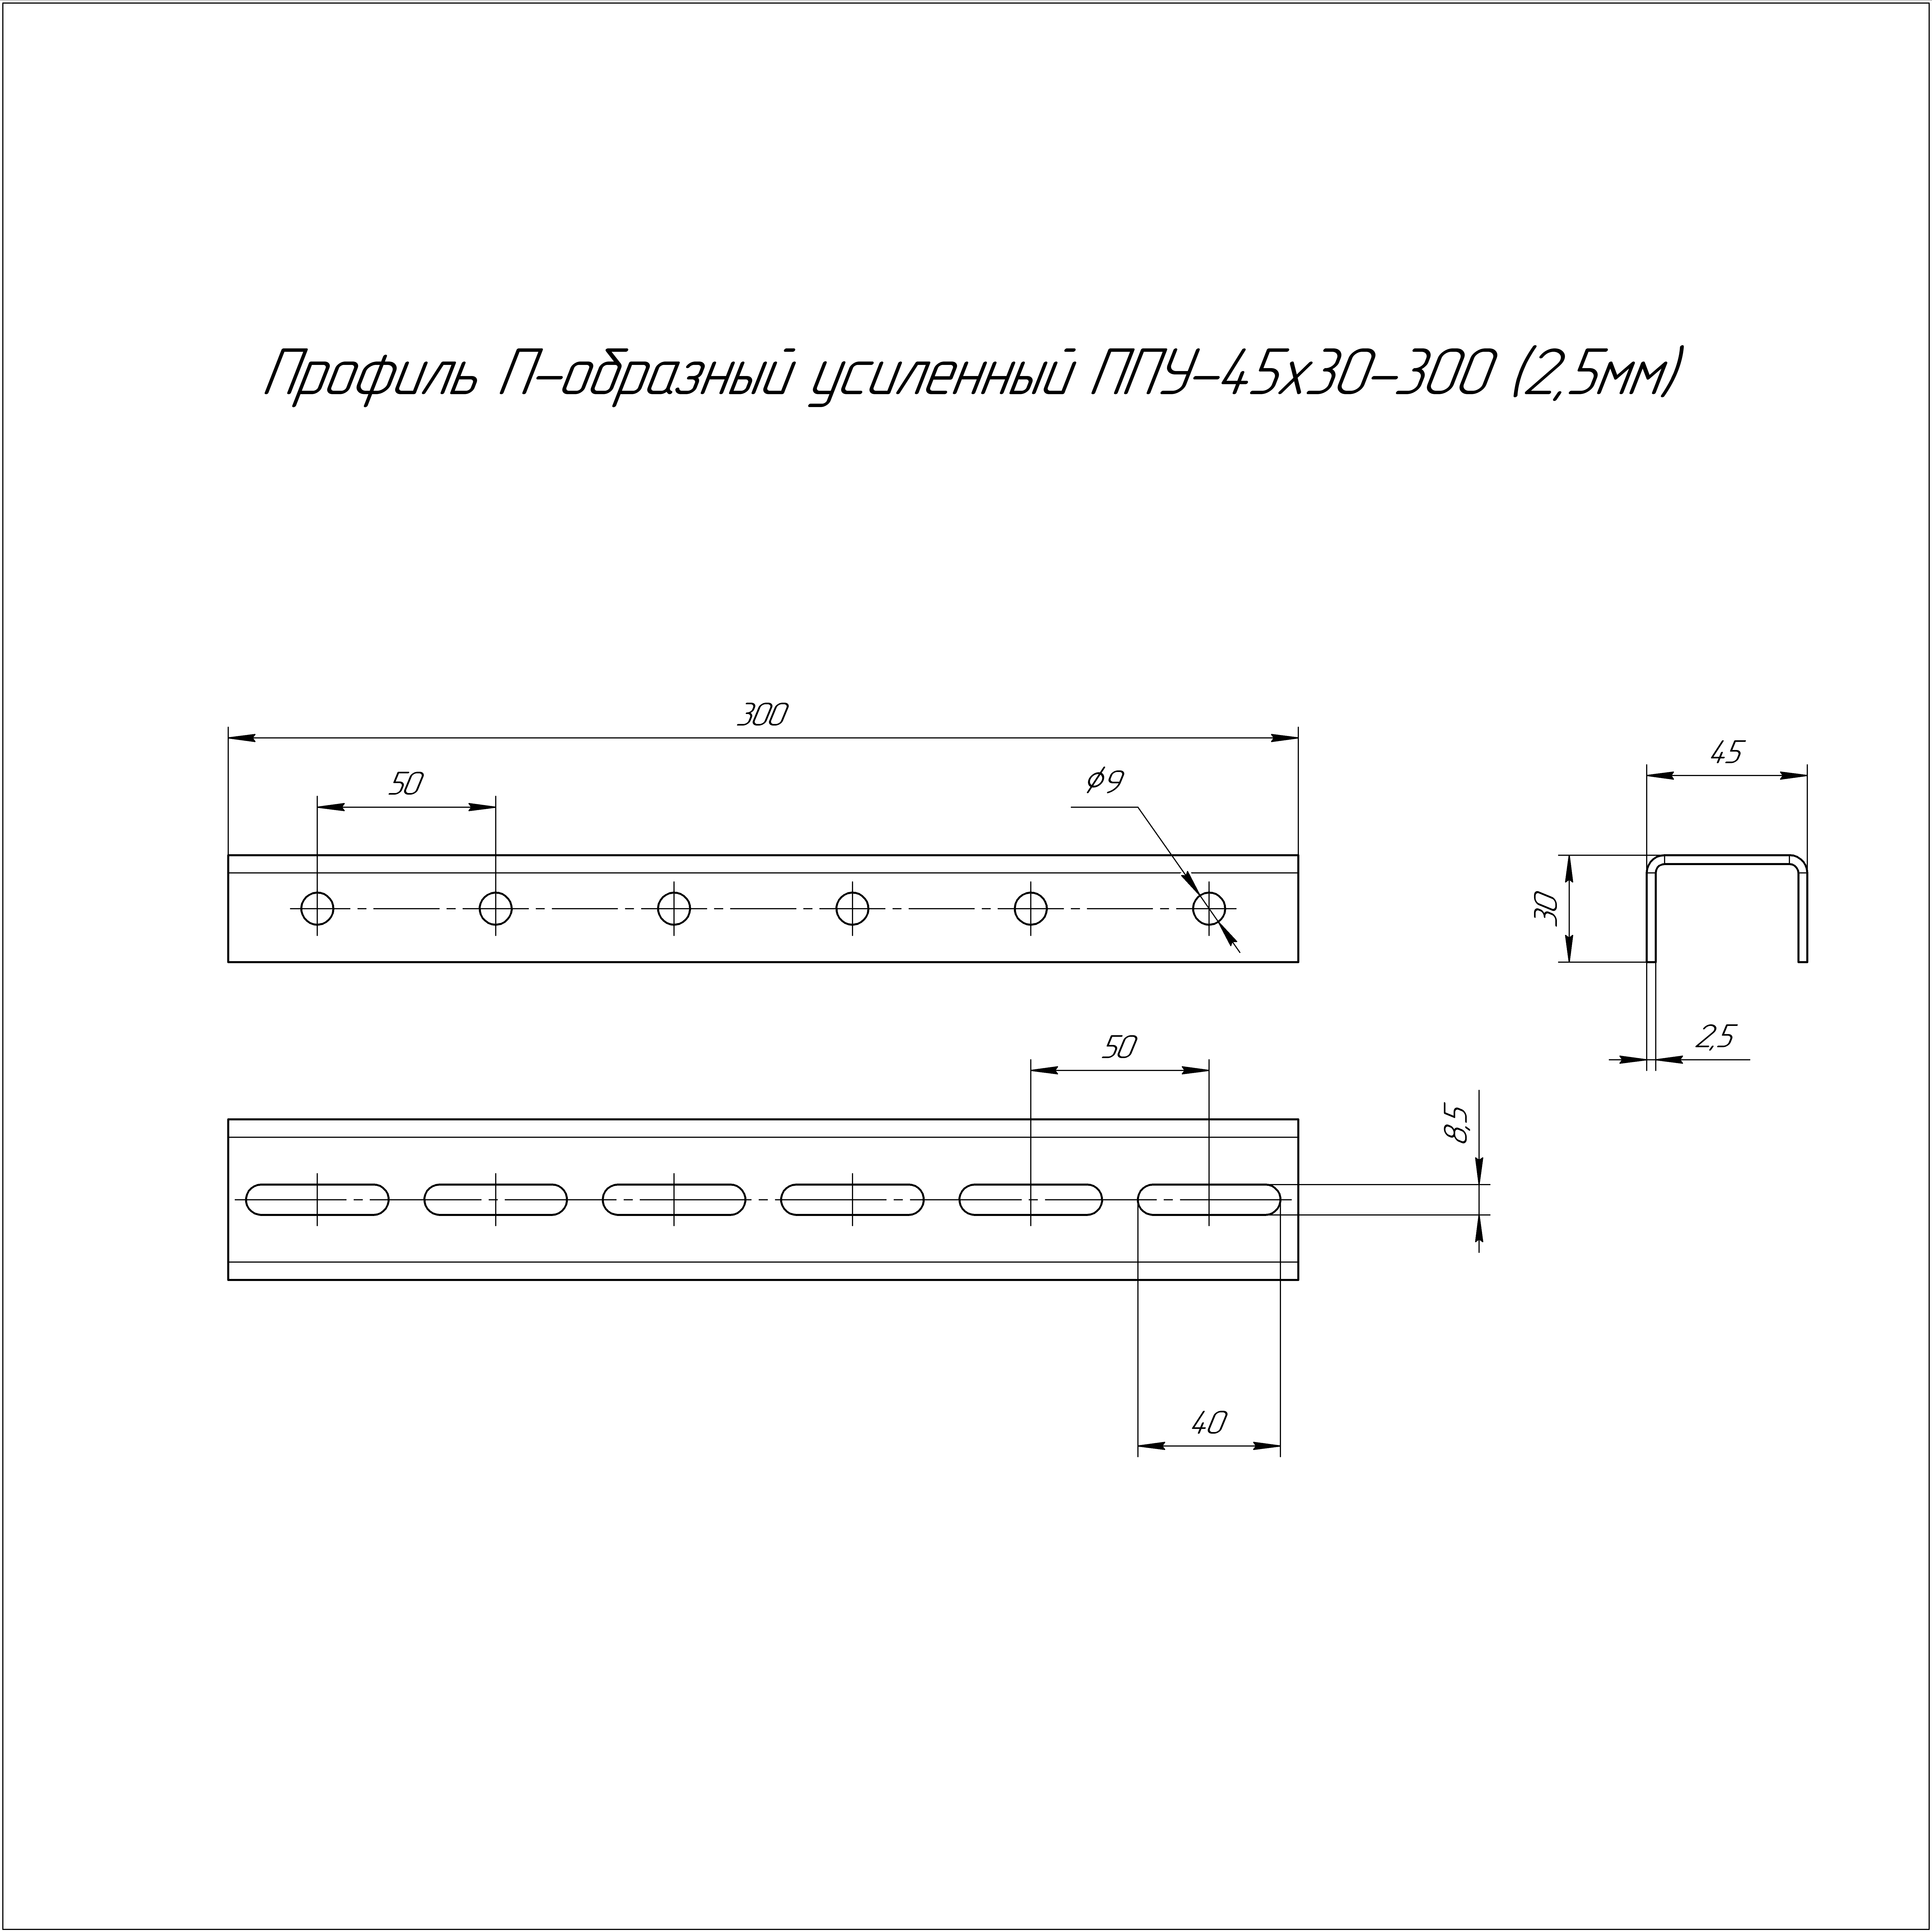 Профиль П-образный усиленный HDZ ППУ-45х30х300 (2,5 мм) Промрукав